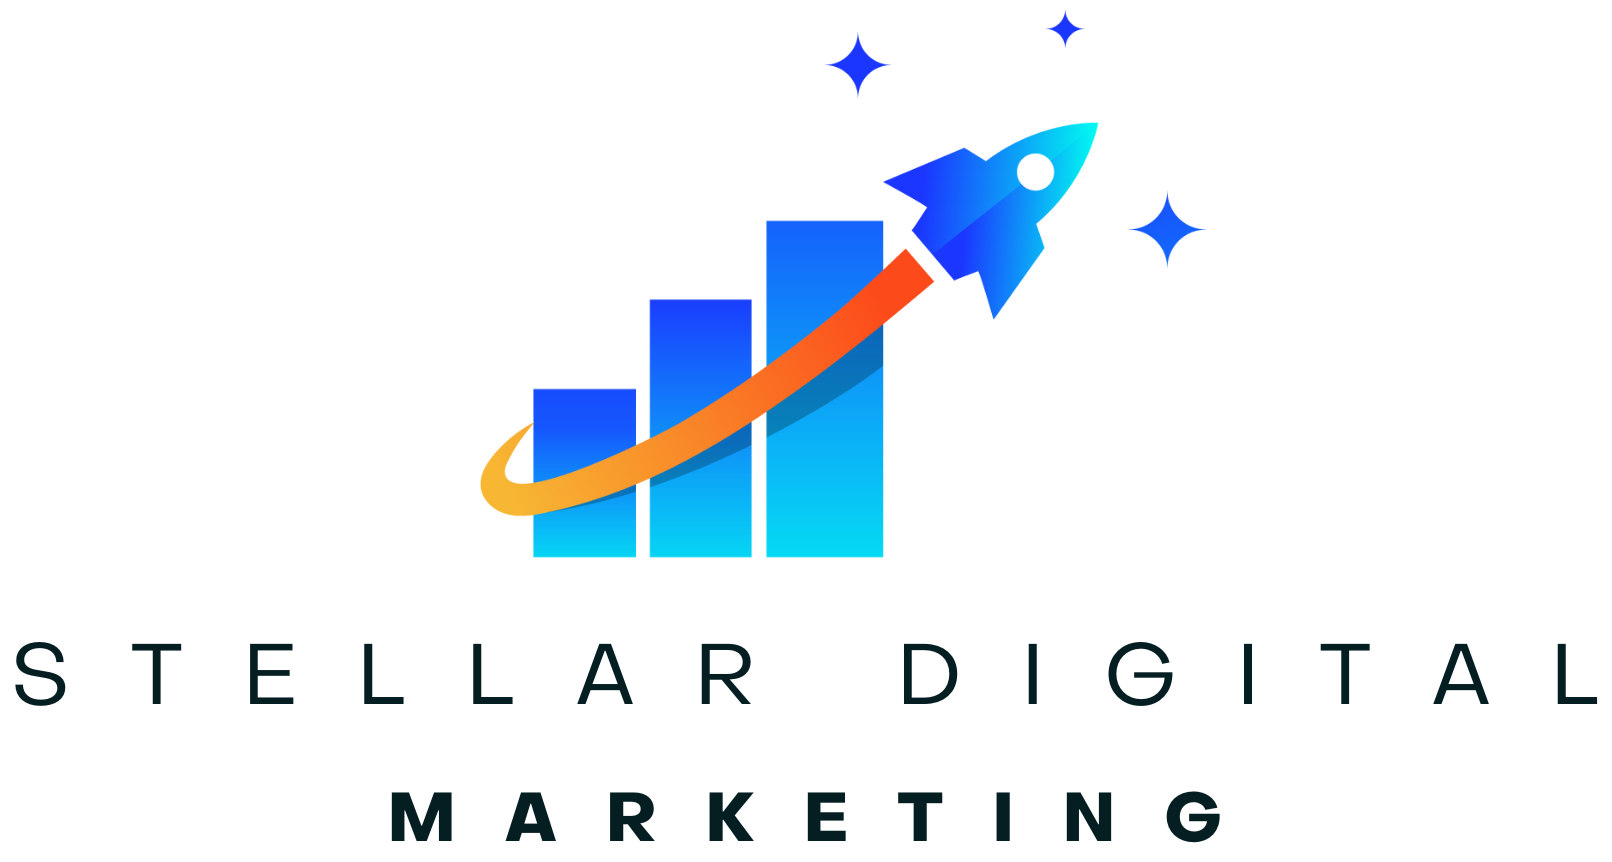 Stellar Digital Marketing logo